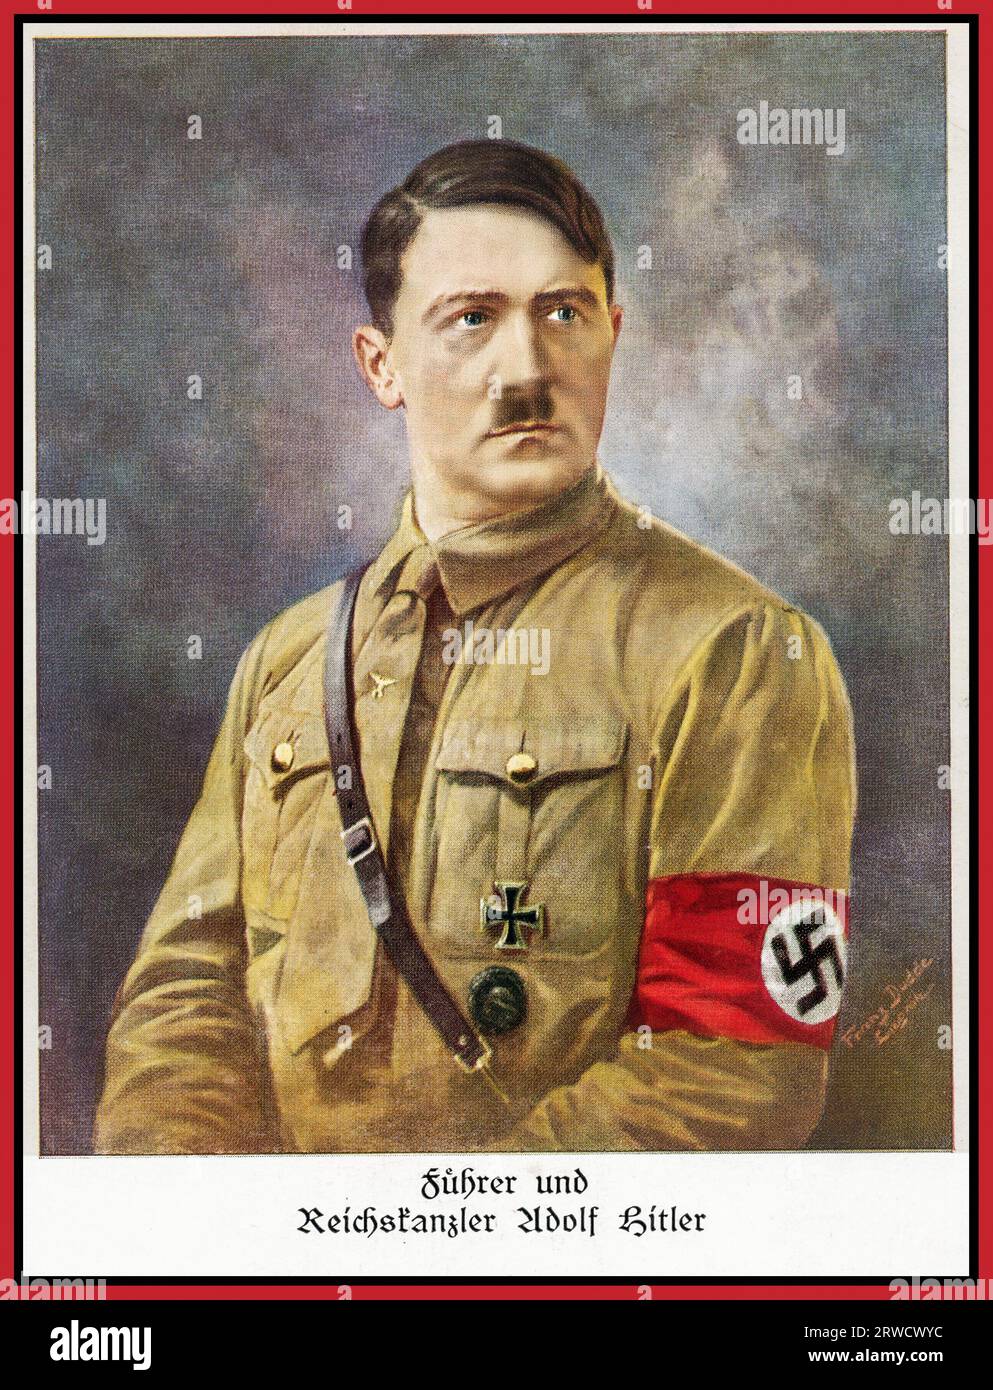 1930er Adolf Hitler Portrait in NSDAP Uniform mit Hakenkreuz-Armband als Führer und REICHSKANZLER von Nazi-Deutschland Stockfoto